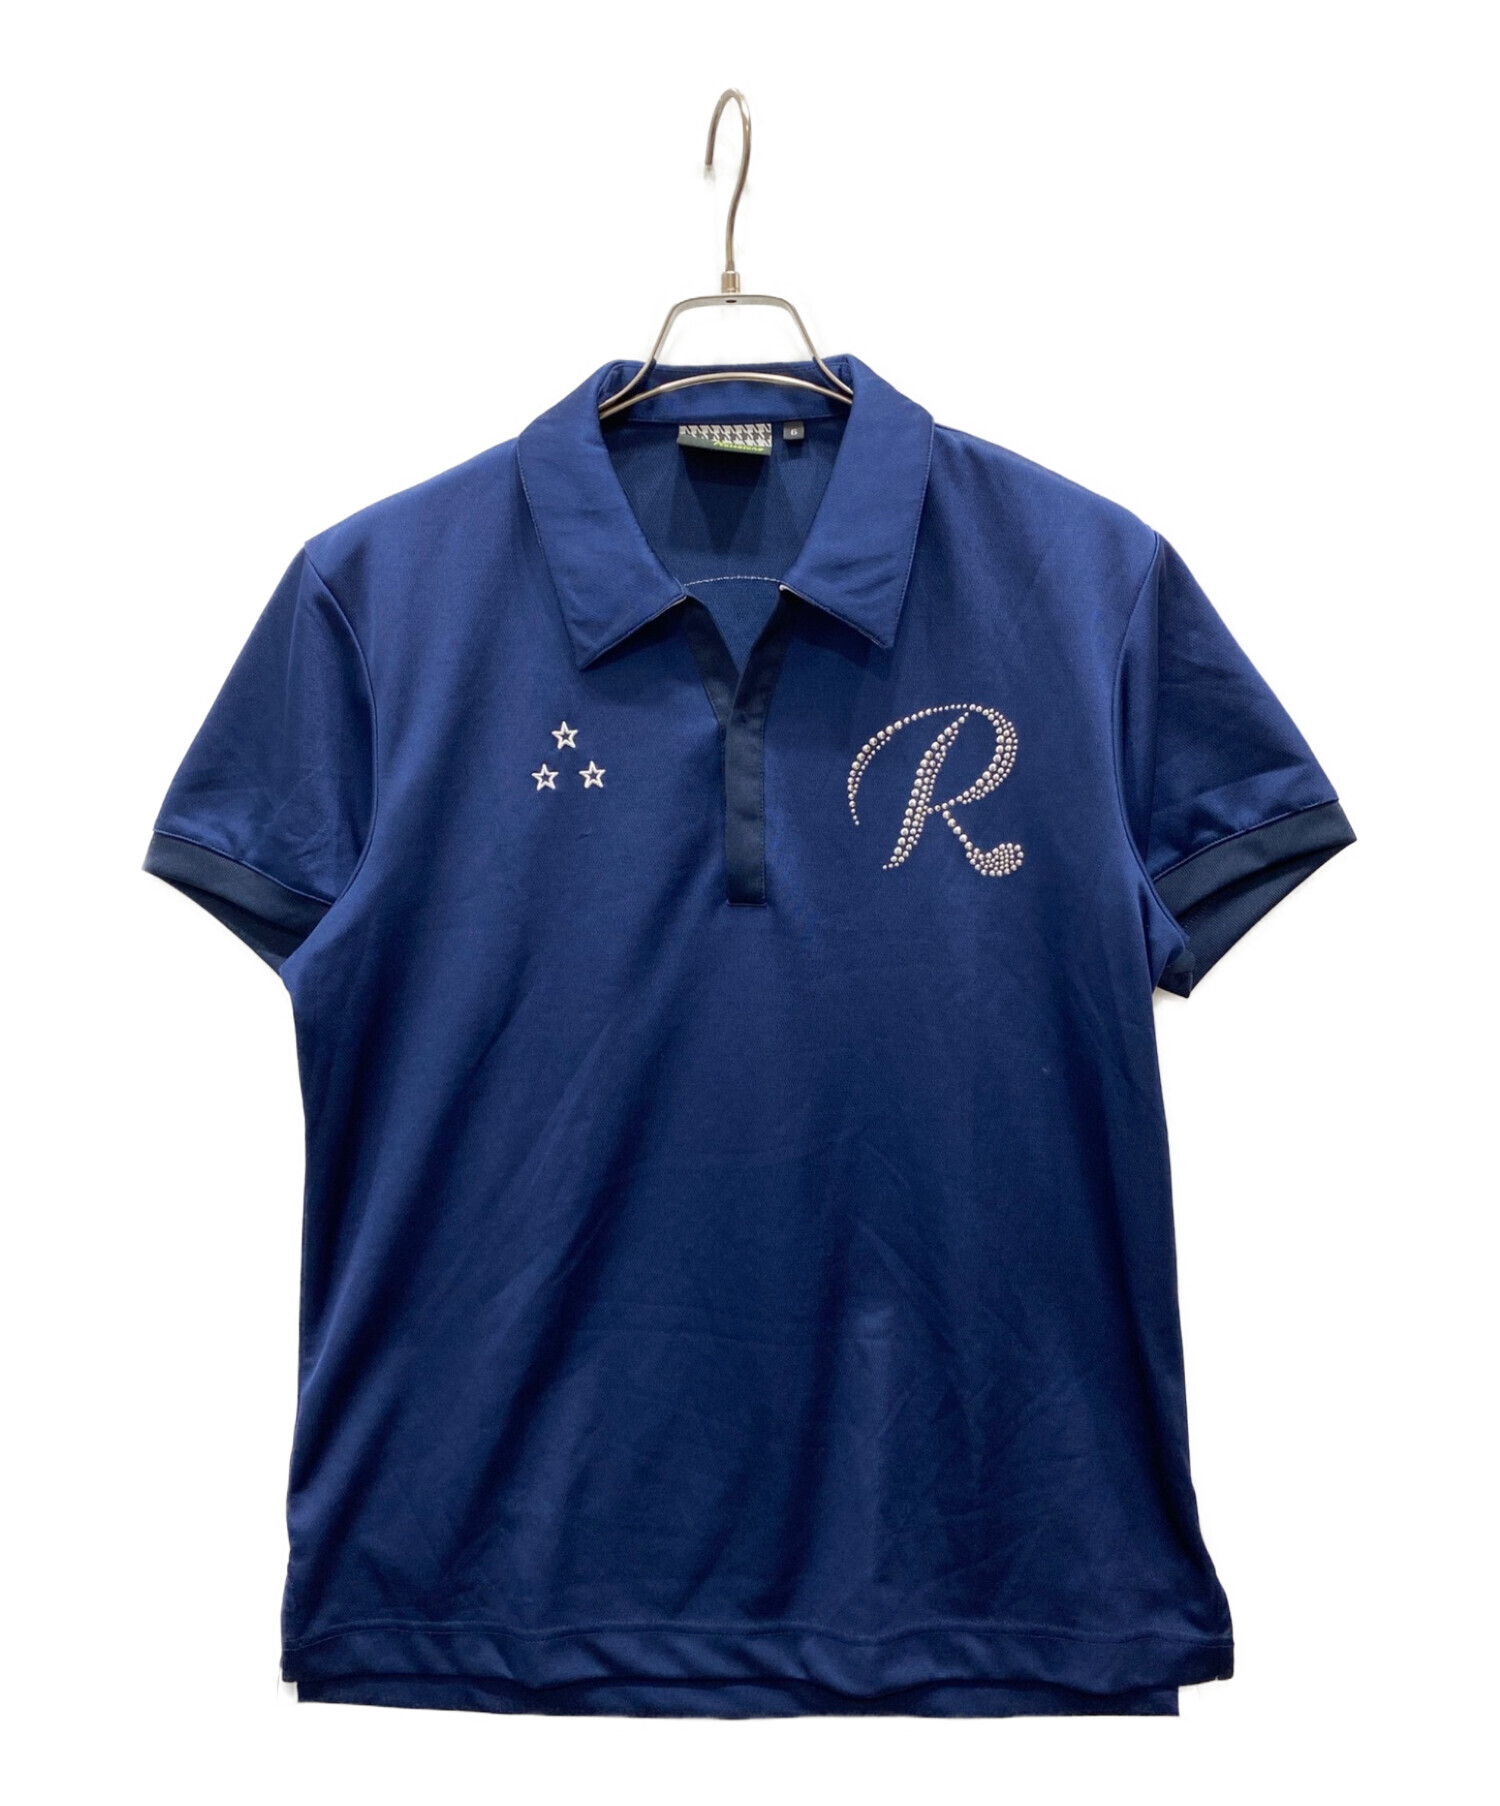 RUSSELUNO (ラッセルノ) スカルプリントスパンコールポロシャツ ネイビー サイズ:6